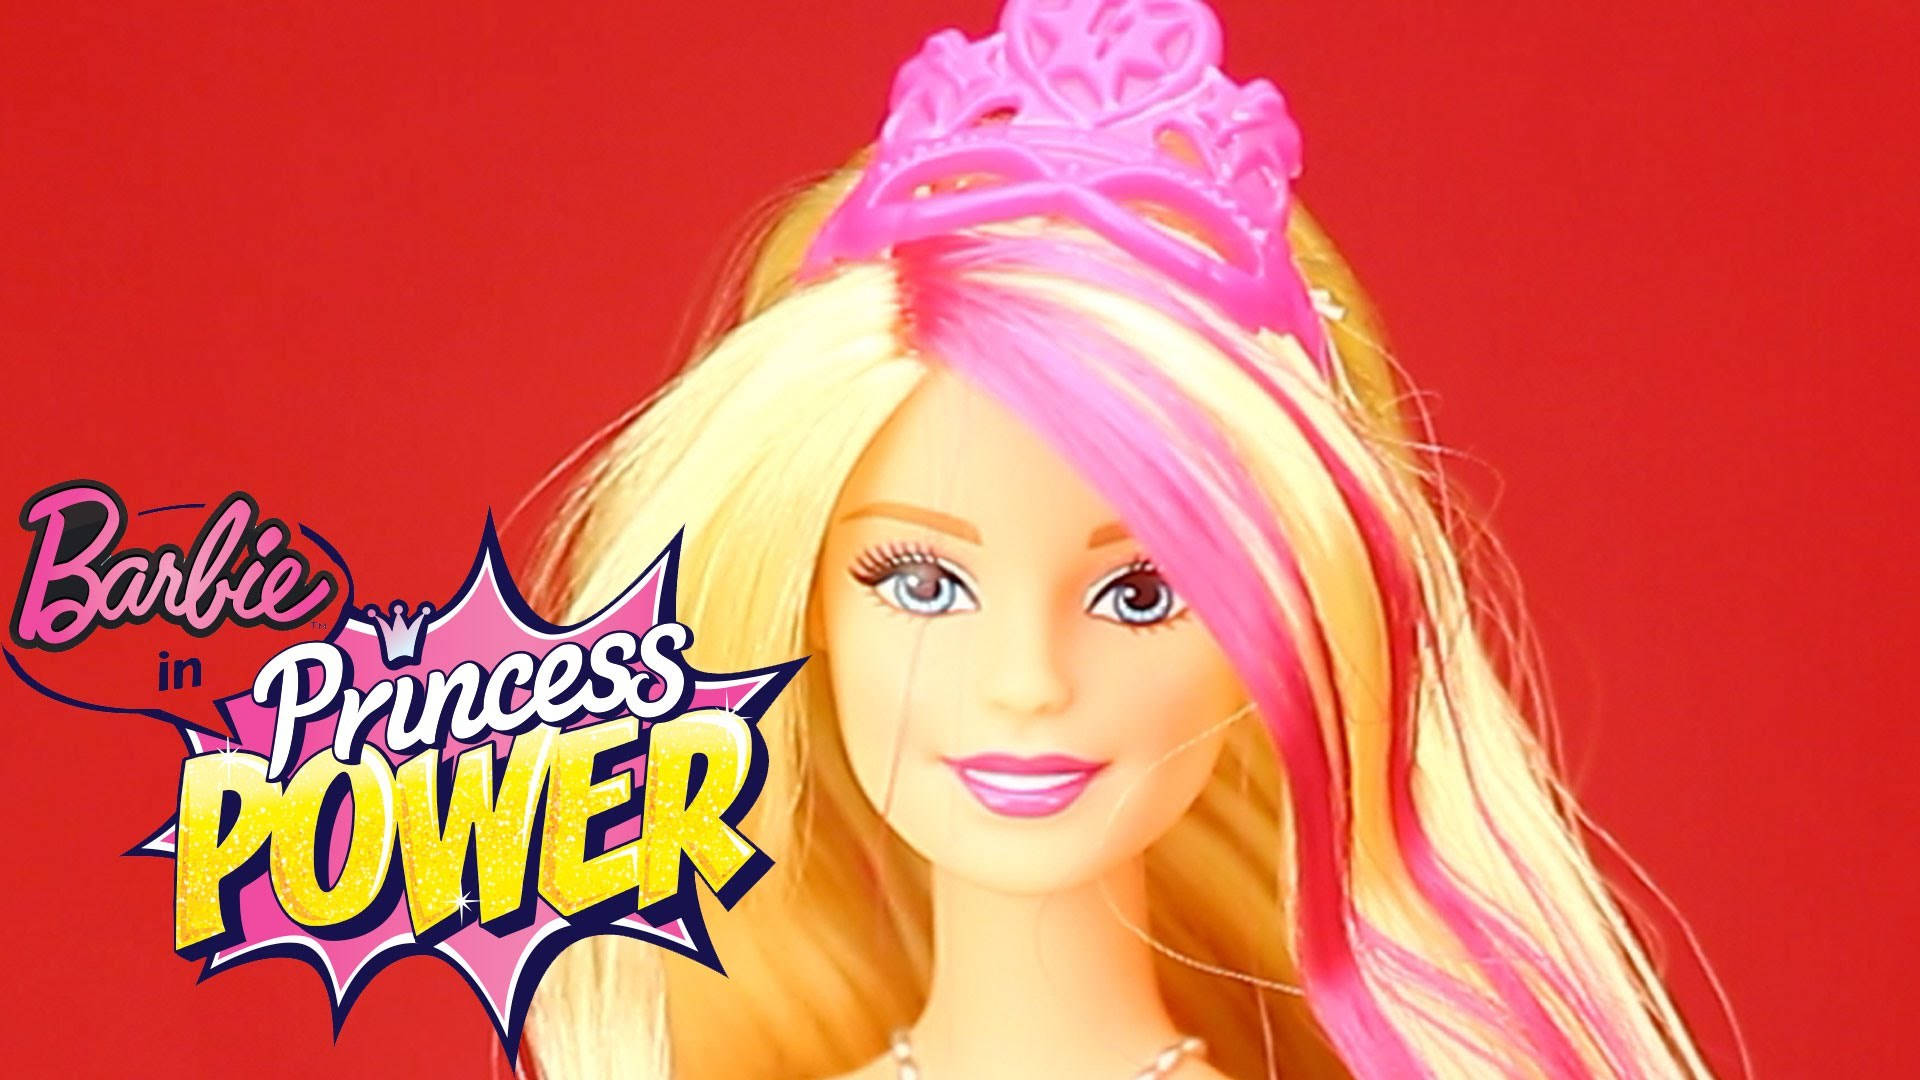 Barbieprincesa Poder Primer Plano Fondo de pantalla